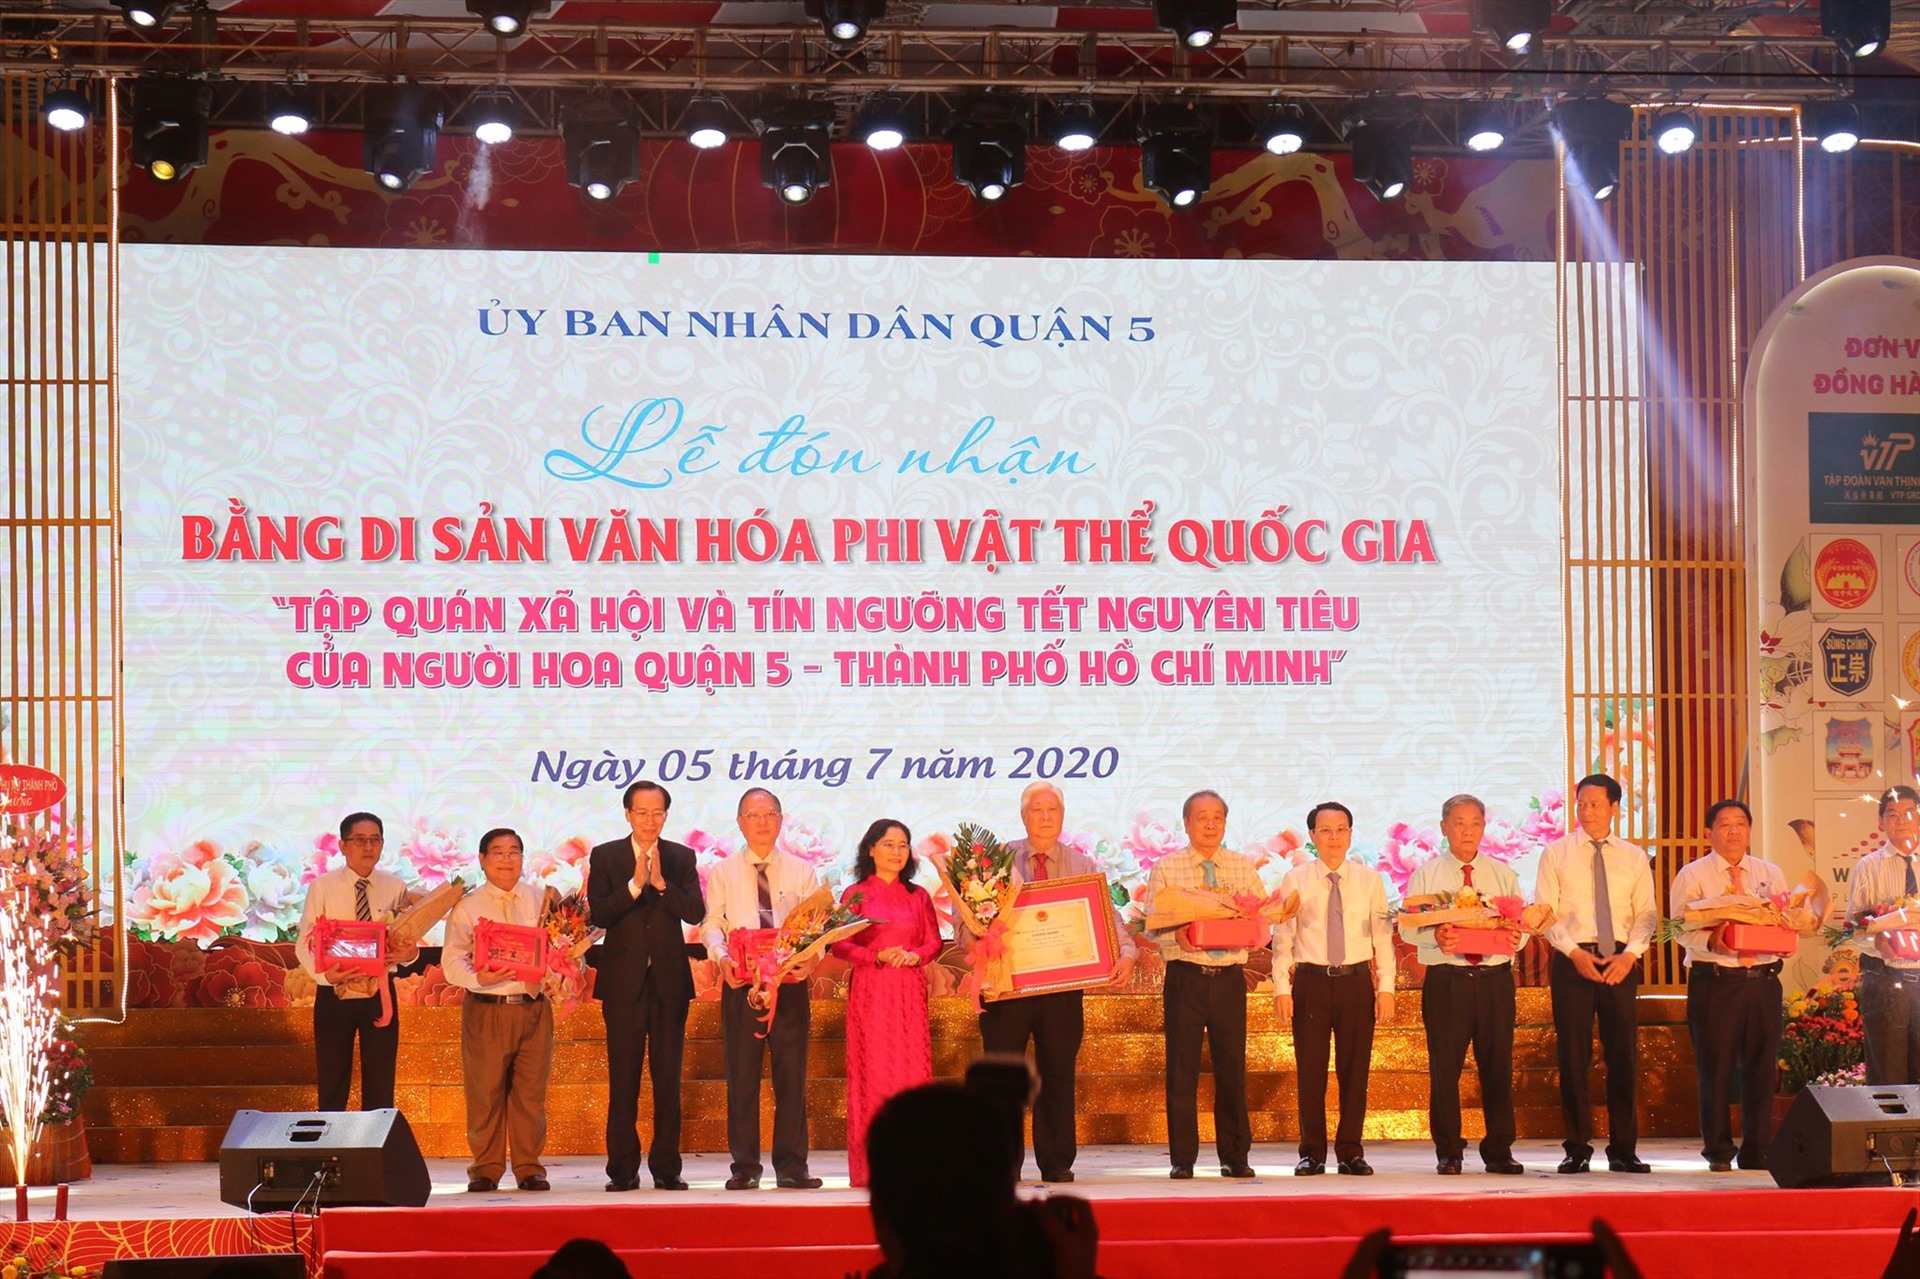 Phó Bí thư Thành ủy Thành phố Hồ Chí Minh Nguyễn Thị Lệ trao bằng Di sản văn hóa phi vật thể quốc gia cho nhóm Hội quán người Hoa.